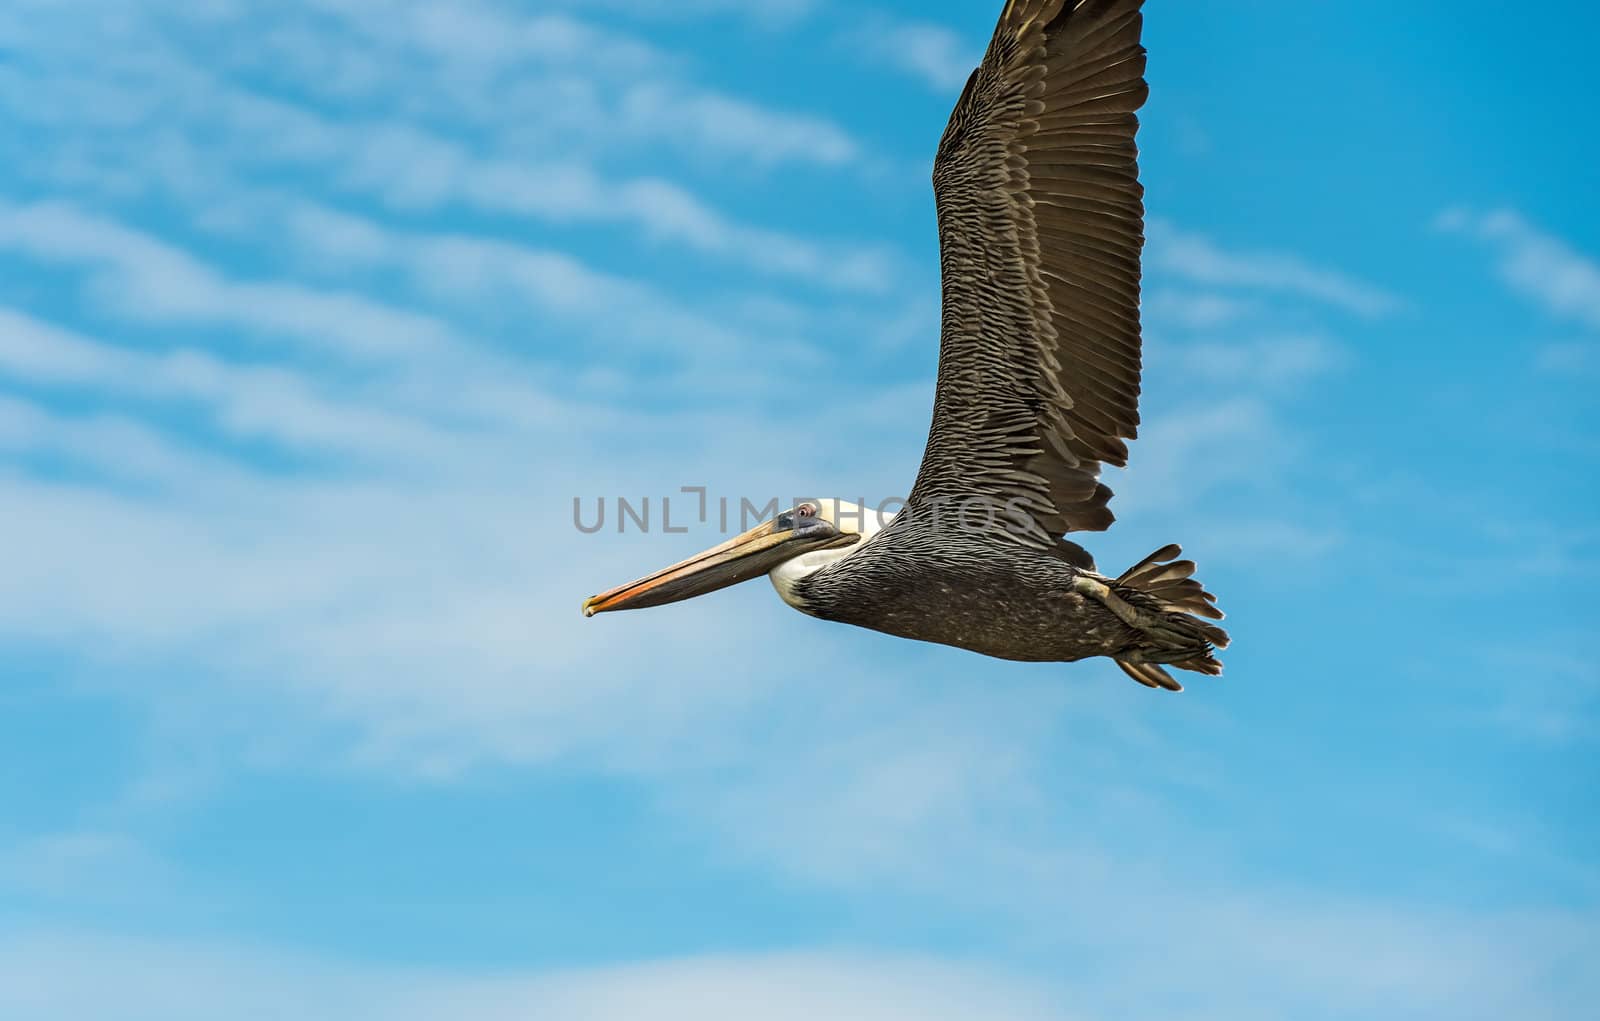 Brown Pelican (Pelecanus occidentalis carolinensis) flying over Ocean in El Rompio Panama